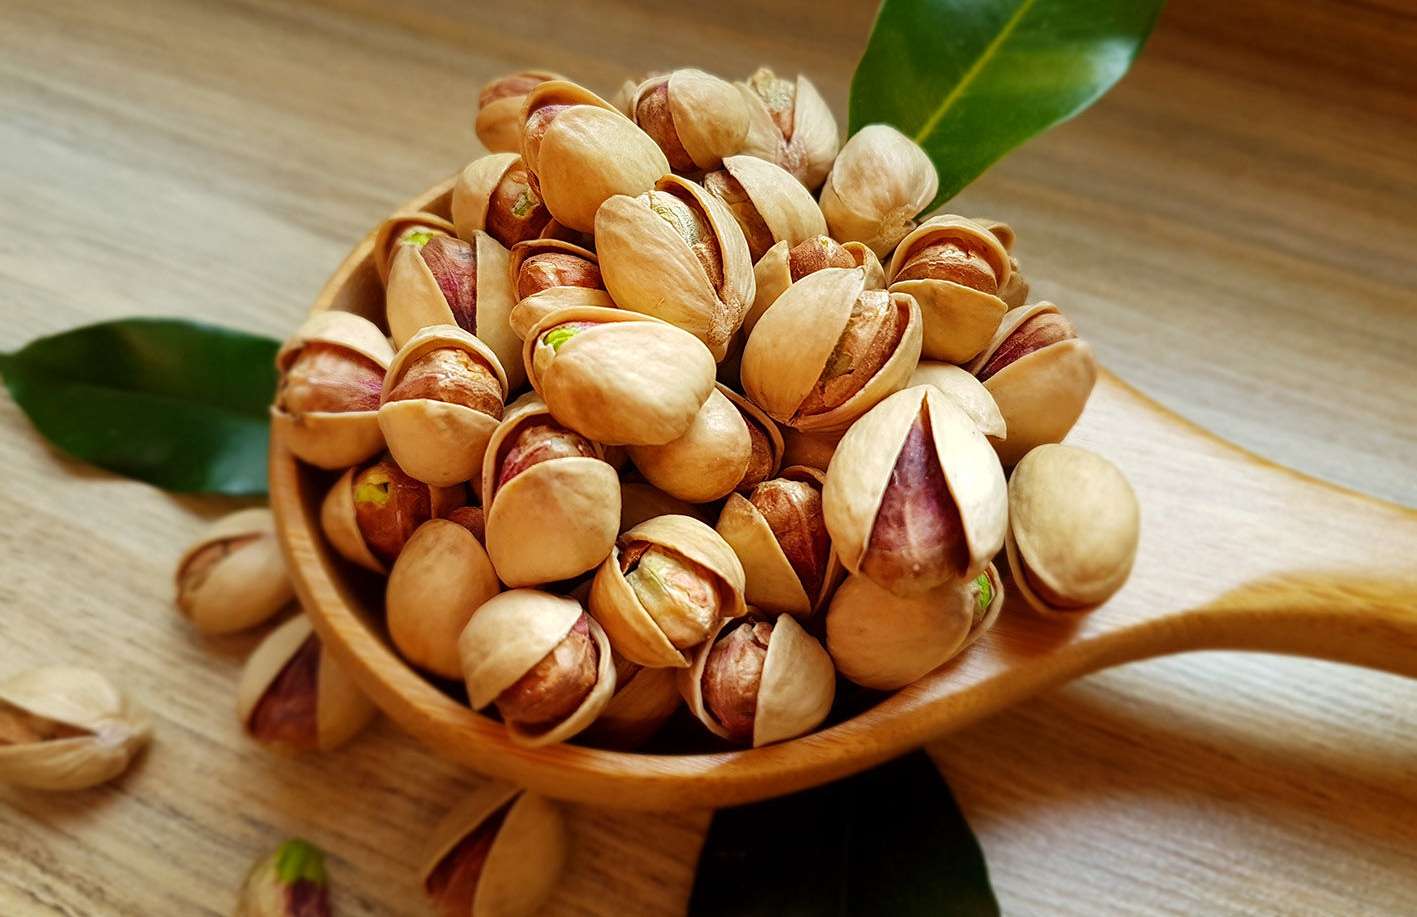 pistachio nuts e1603177873605